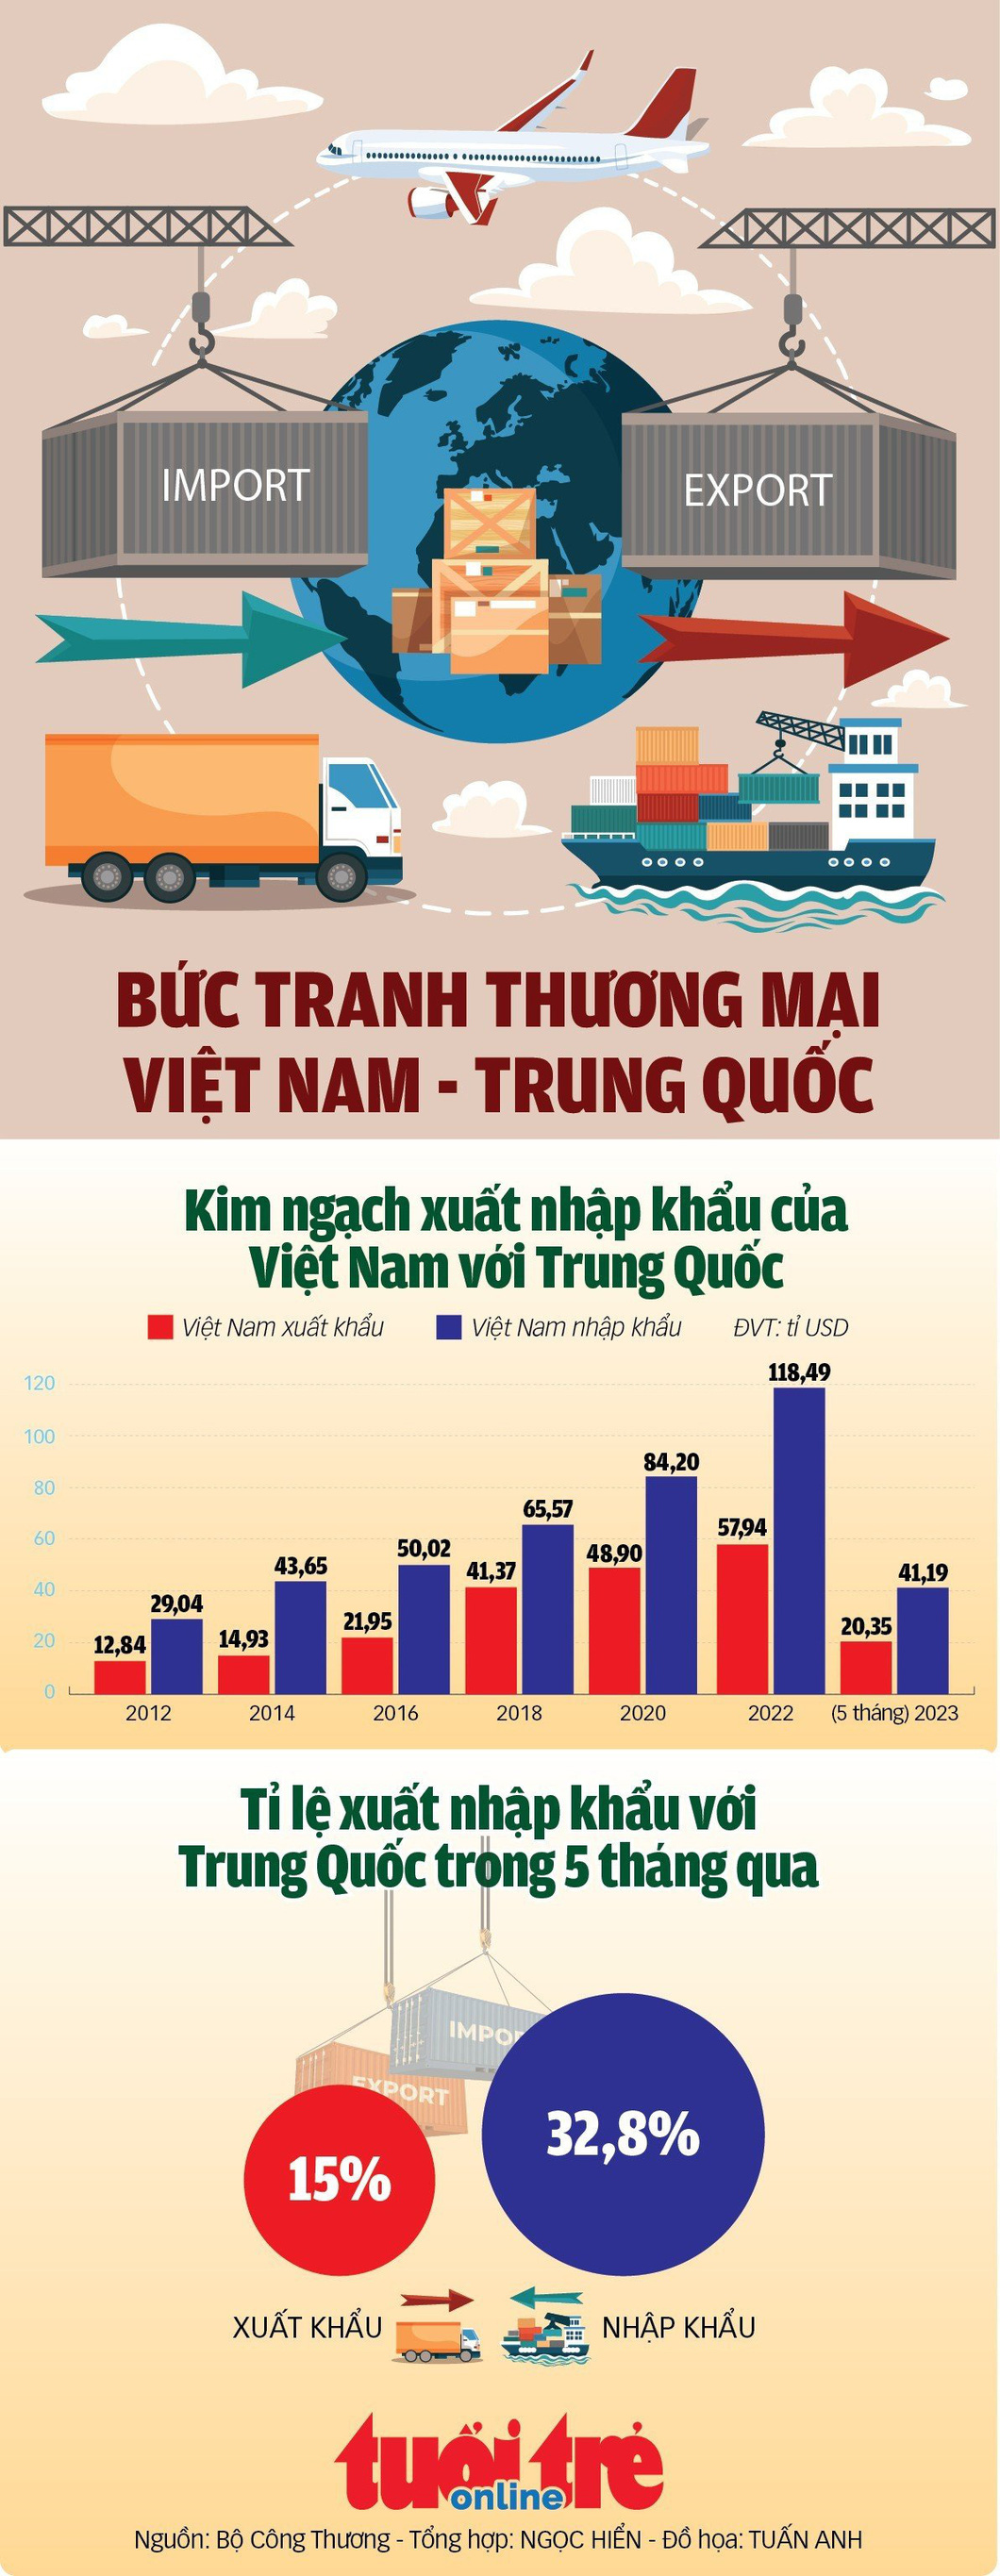 5 tháng, xuất nhập khẩu của Việt Nam với Trung Quốc đạt 61,5 tỉ USD